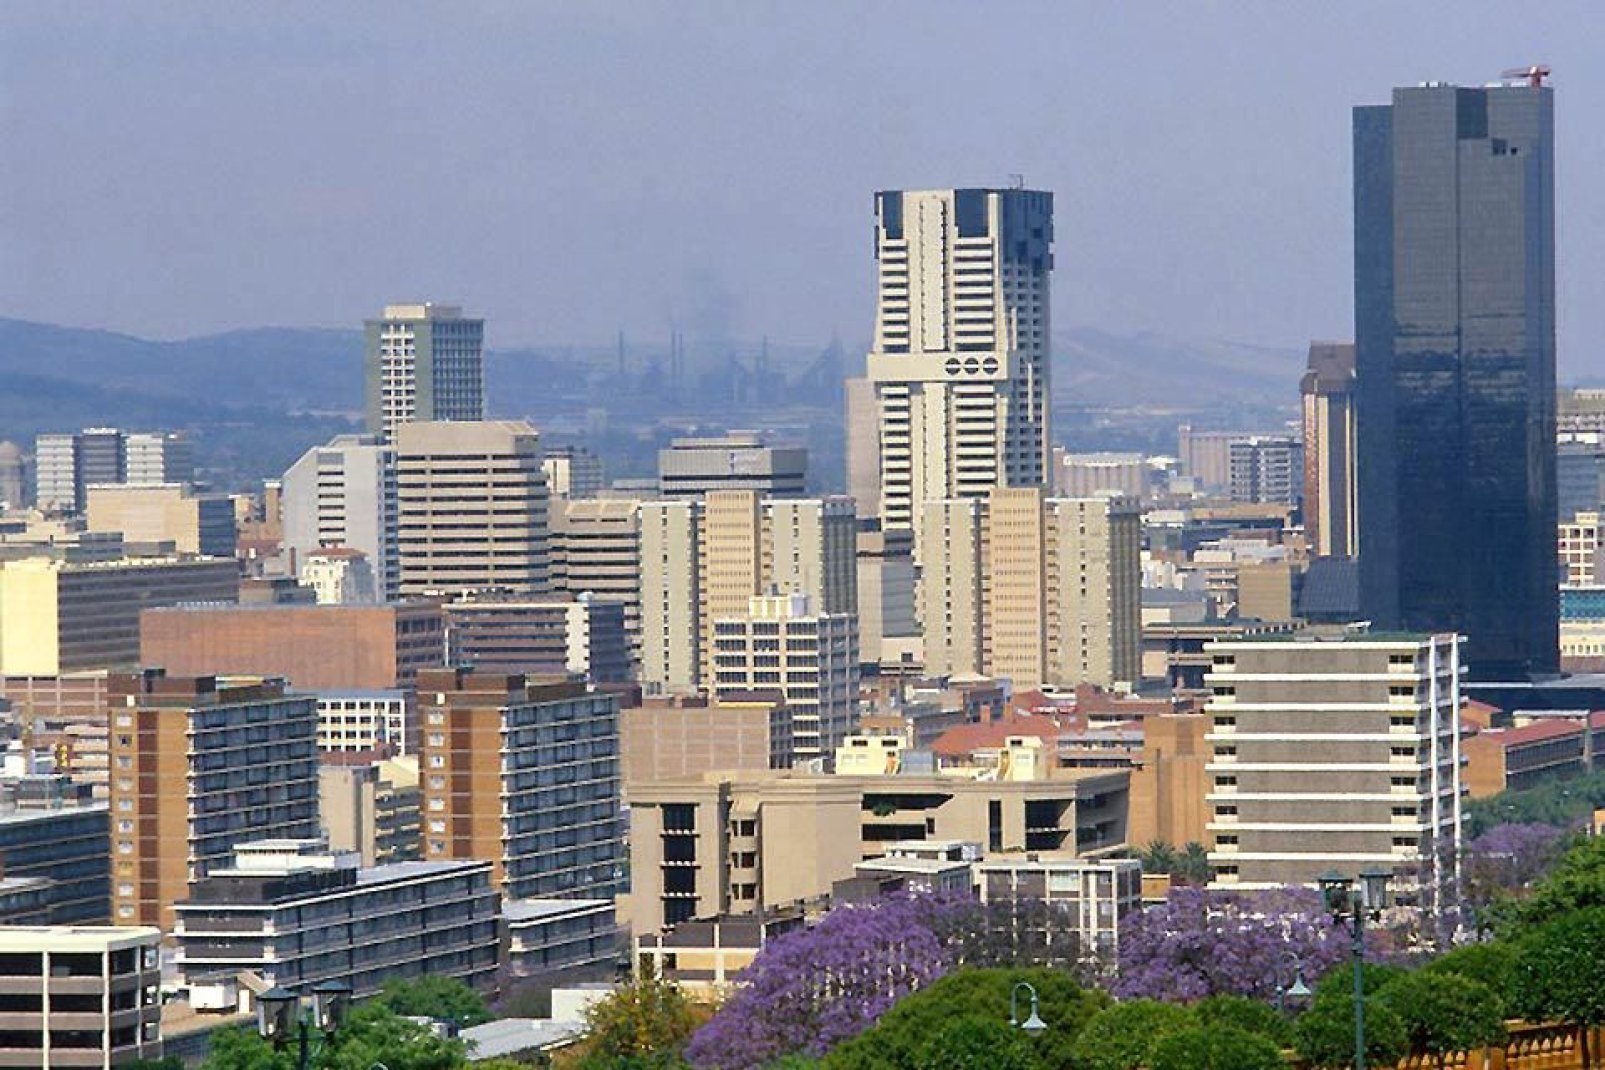 Diese Stadt, einstige südafrikanische Hauptstadt von Transvaal, ist bei den Touristen recht beliebt. Pretoria ist eine dynamische und interessante Stadt.